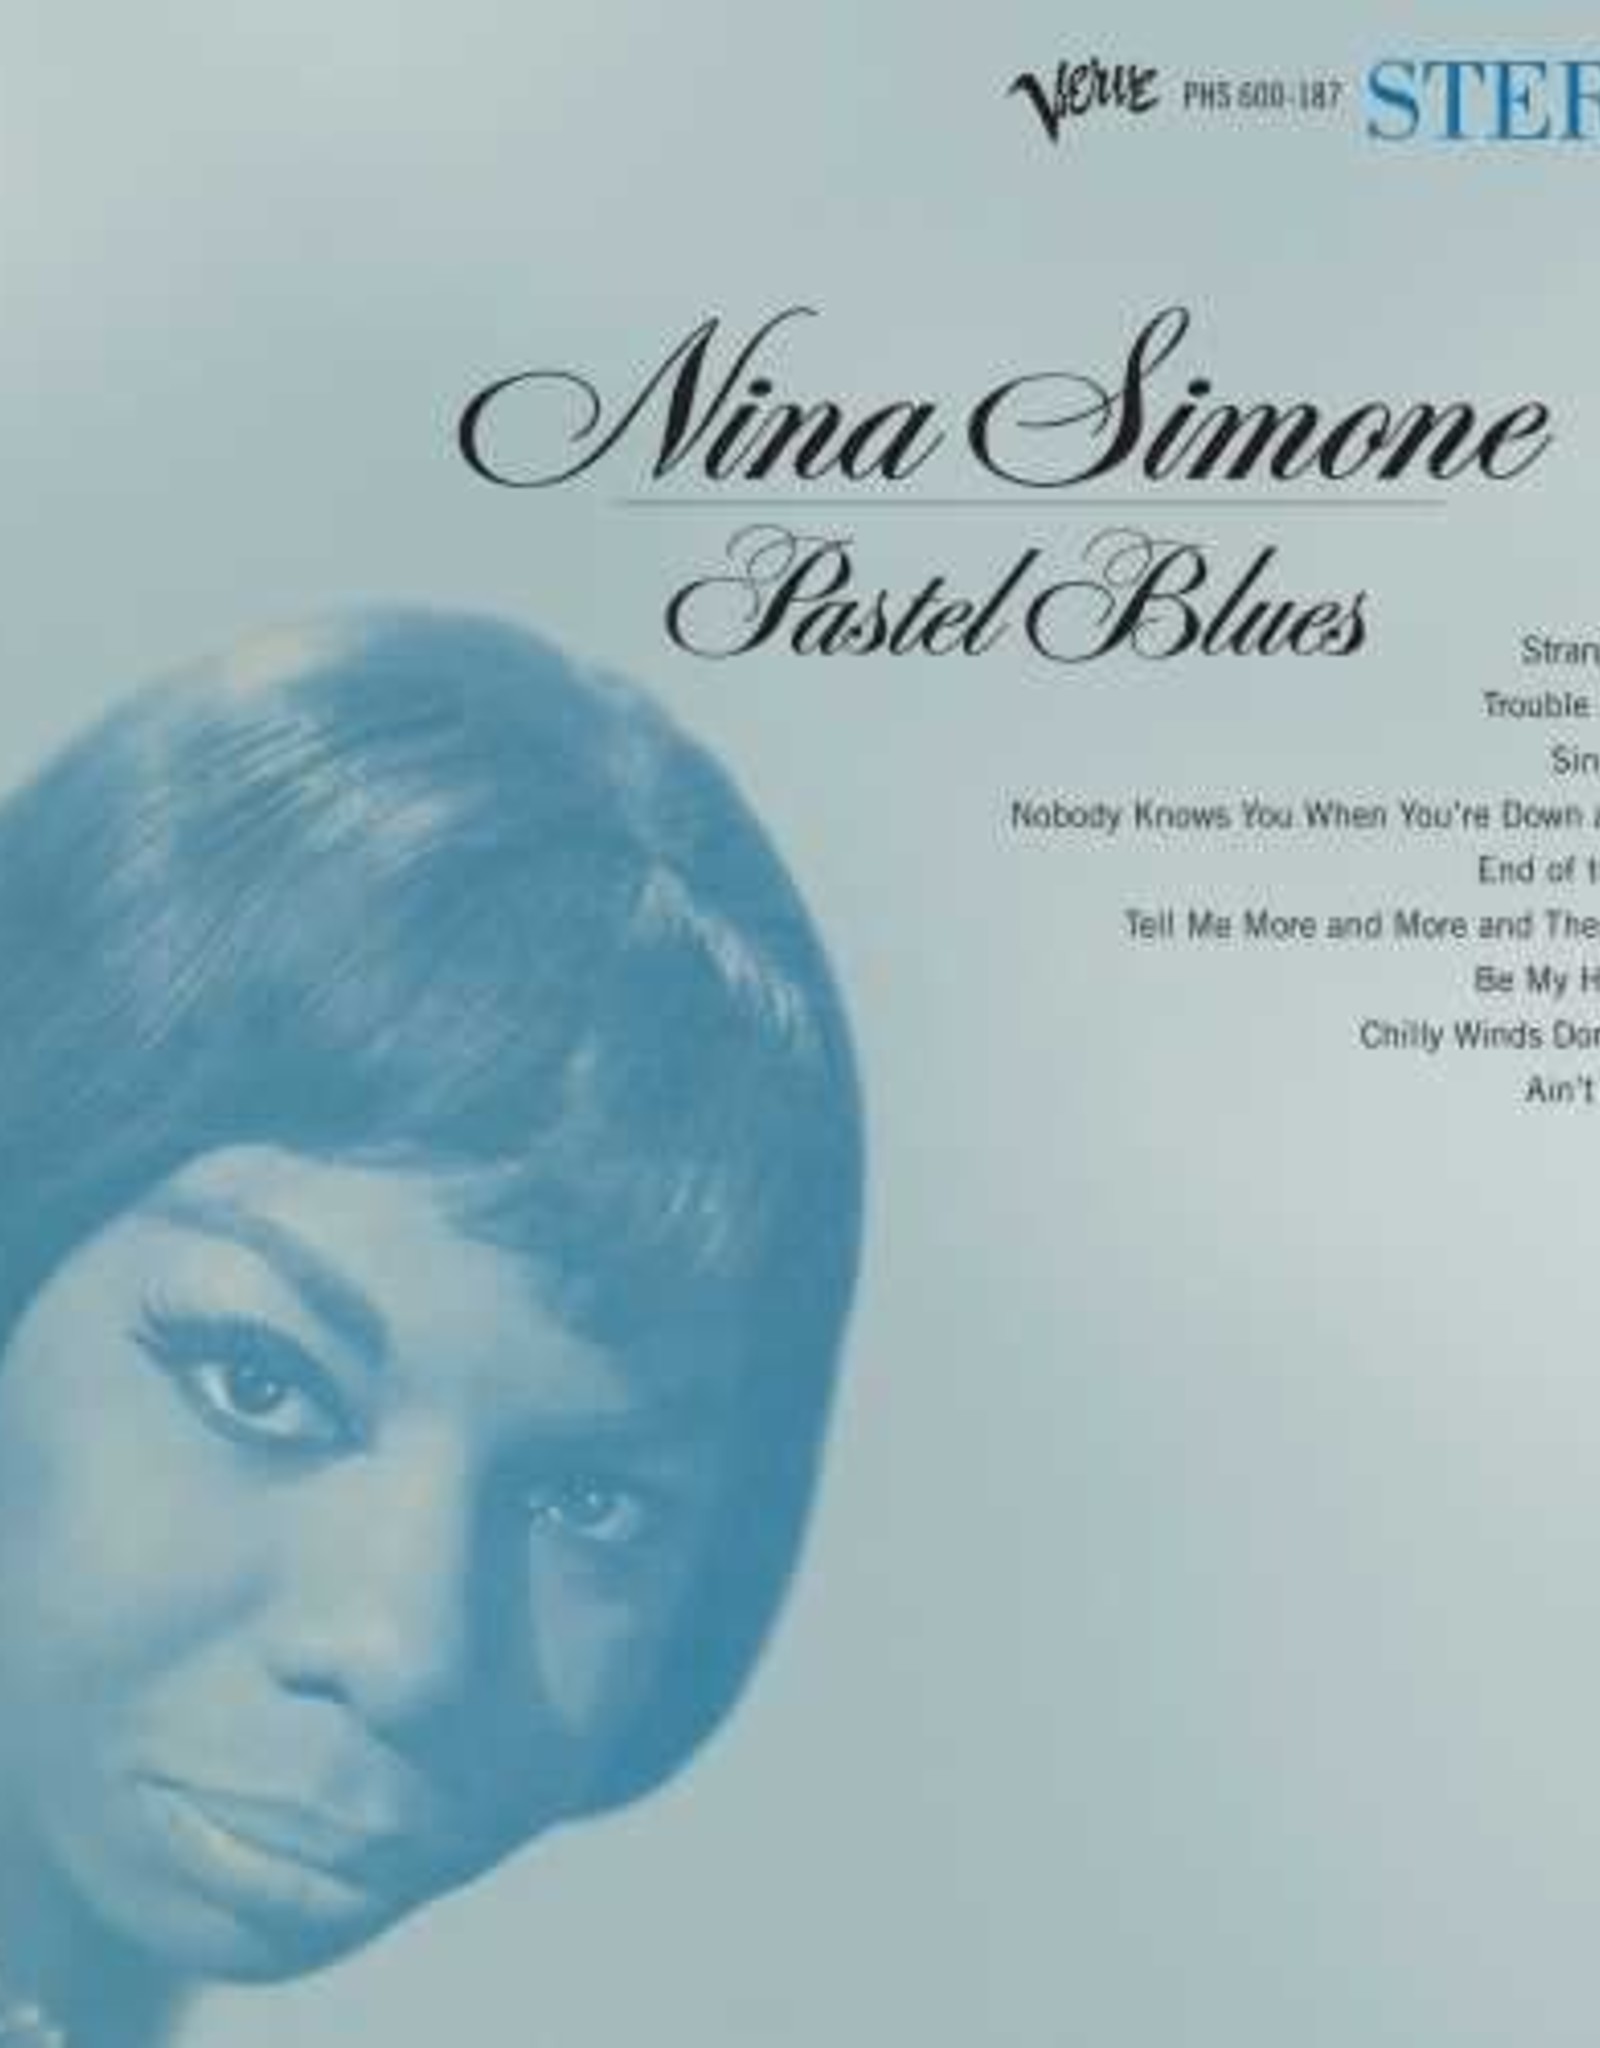 Nina Simone - Pastel Blues (Analog Pressing)